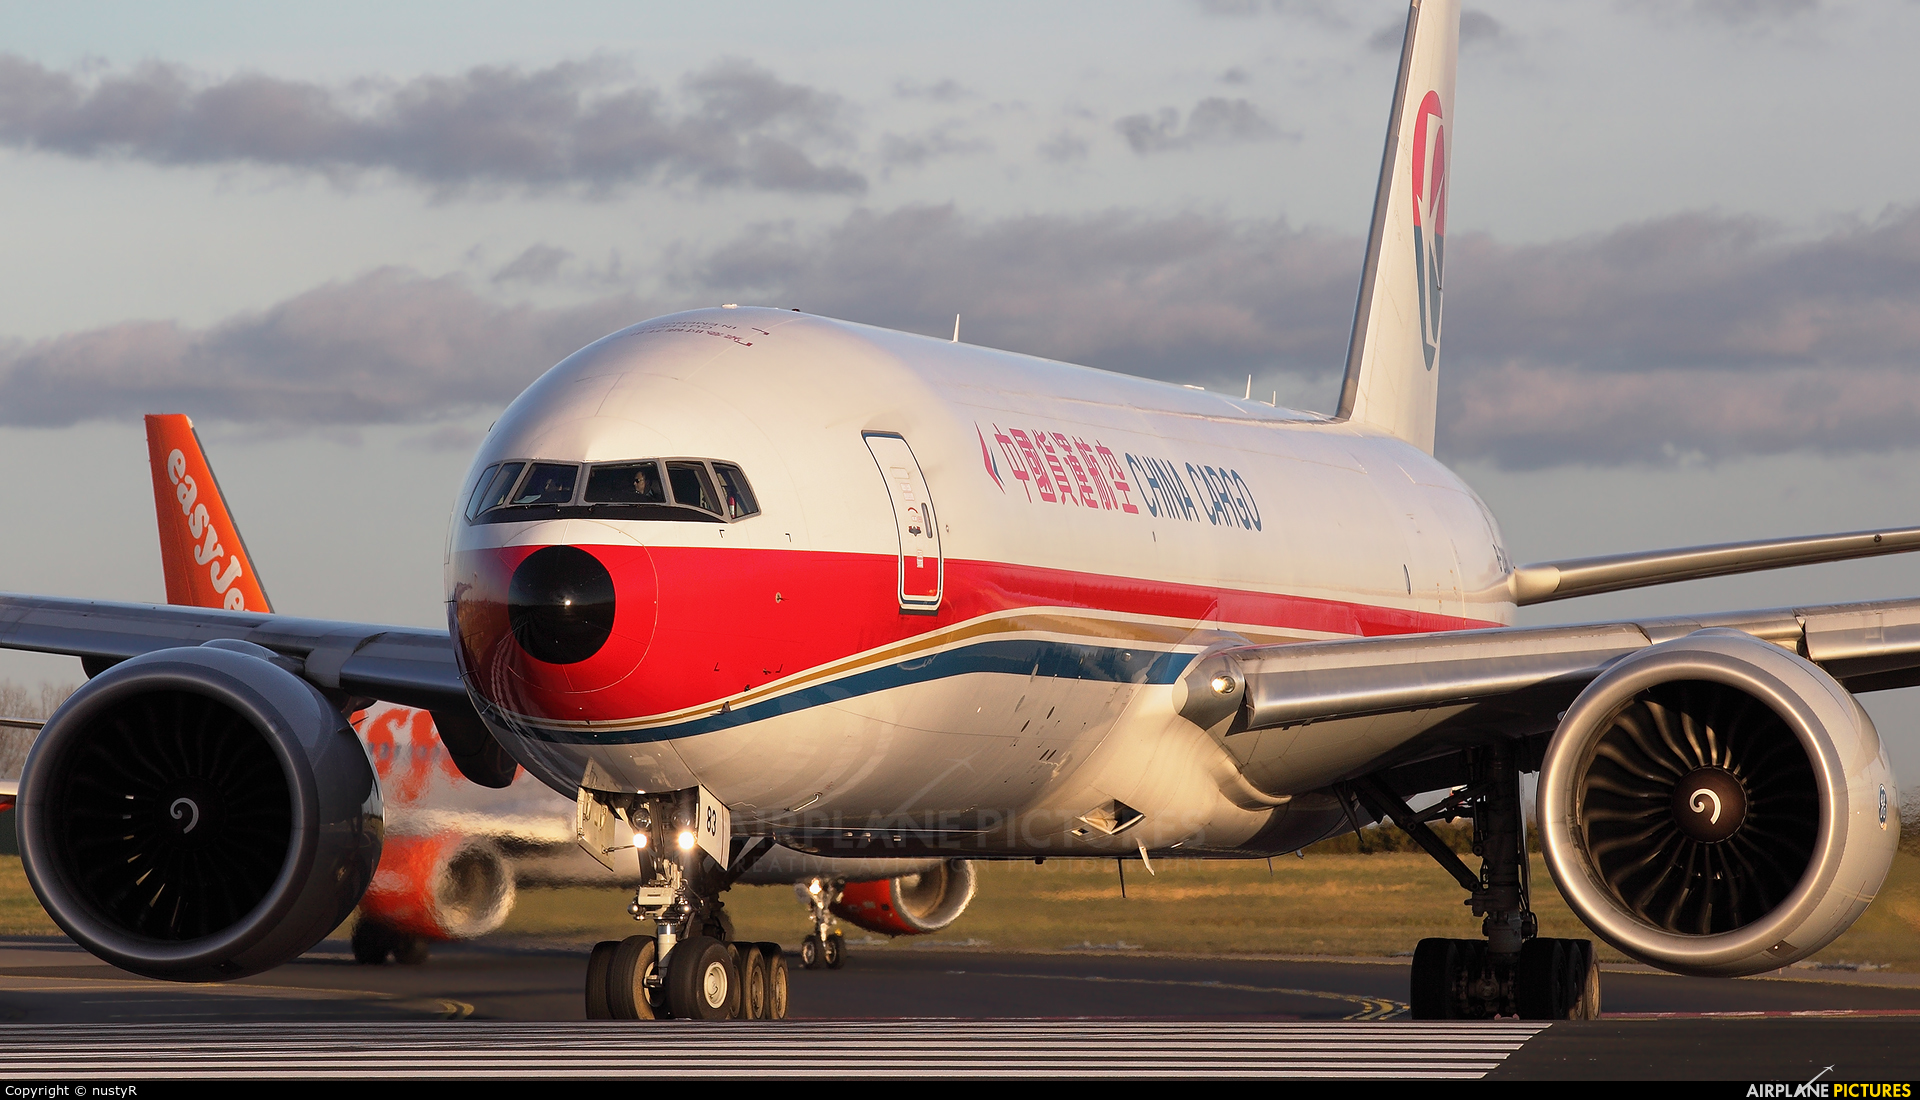 China Cargo B-2083 aircraft at Amsterdam - Schiphol